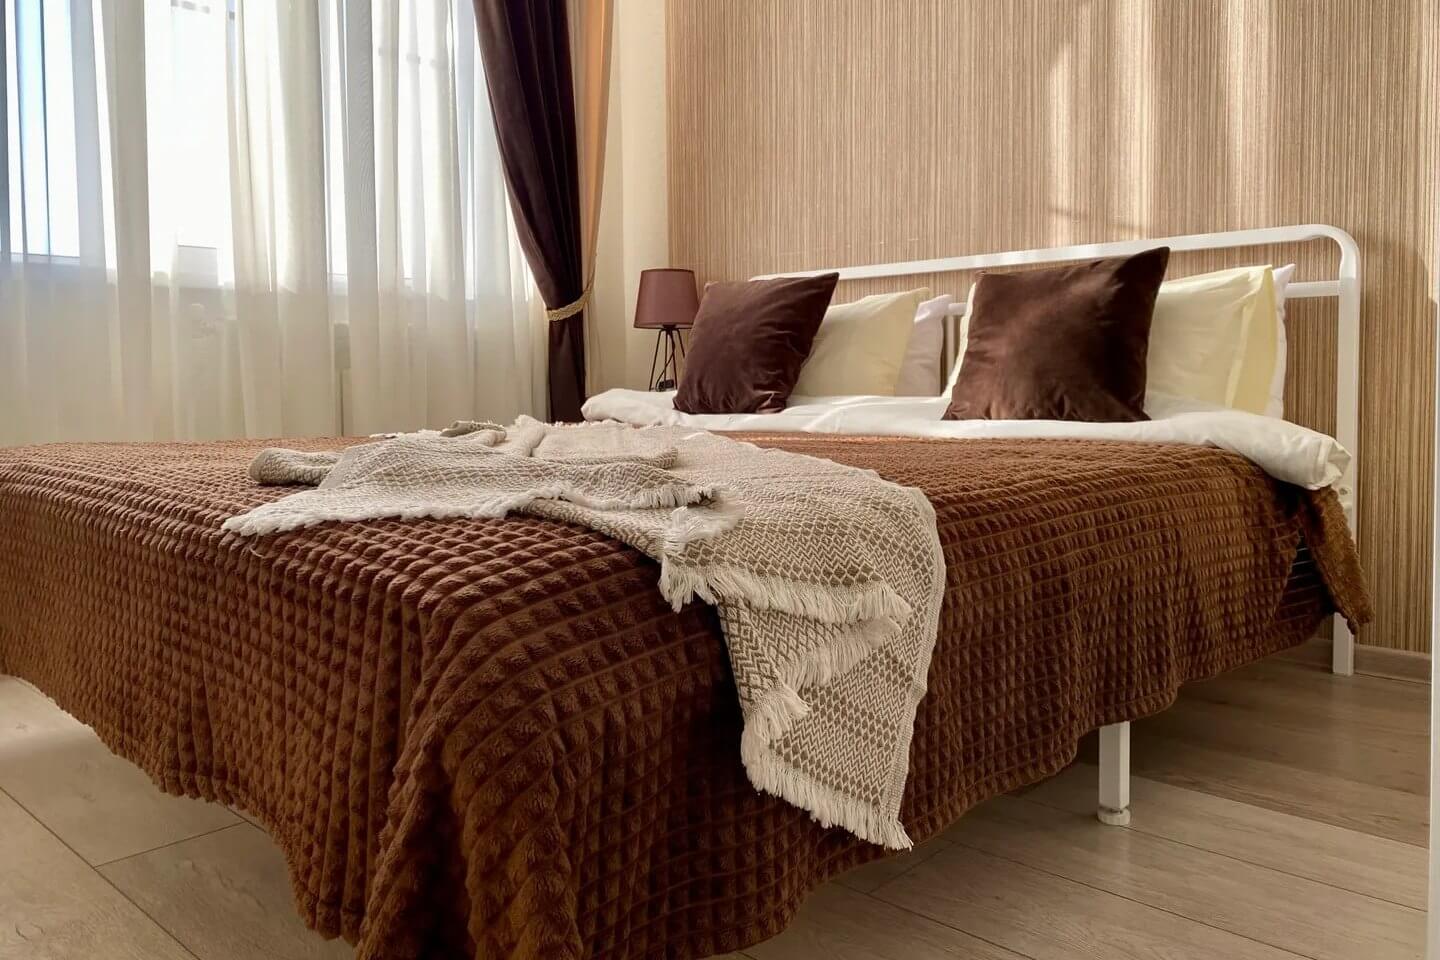 Кровать застелена коричневым покрывалом и накрыта пледом.